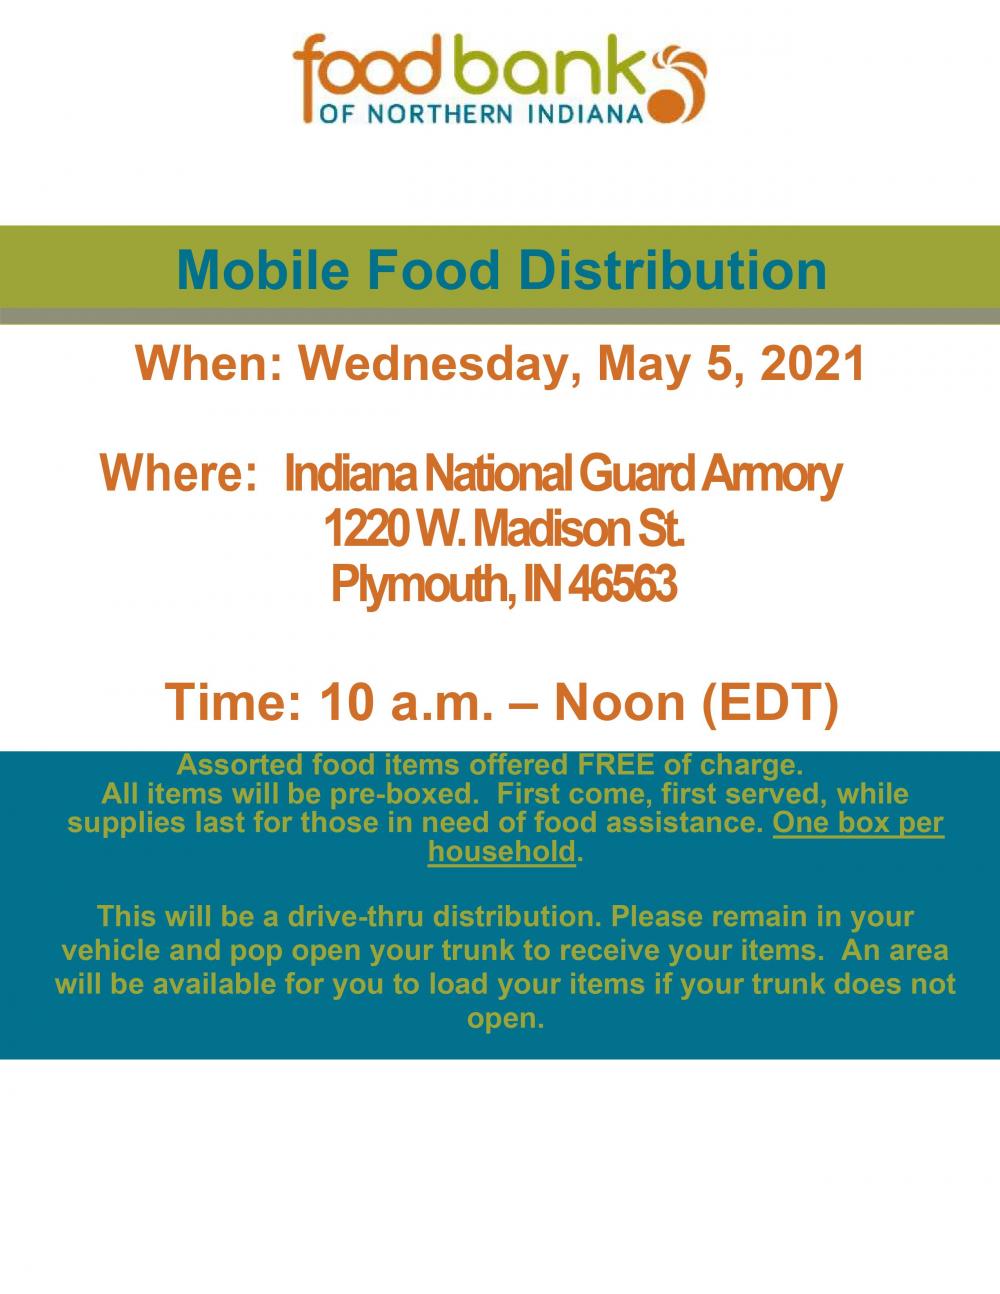 Mobile Food Distribution 5.5